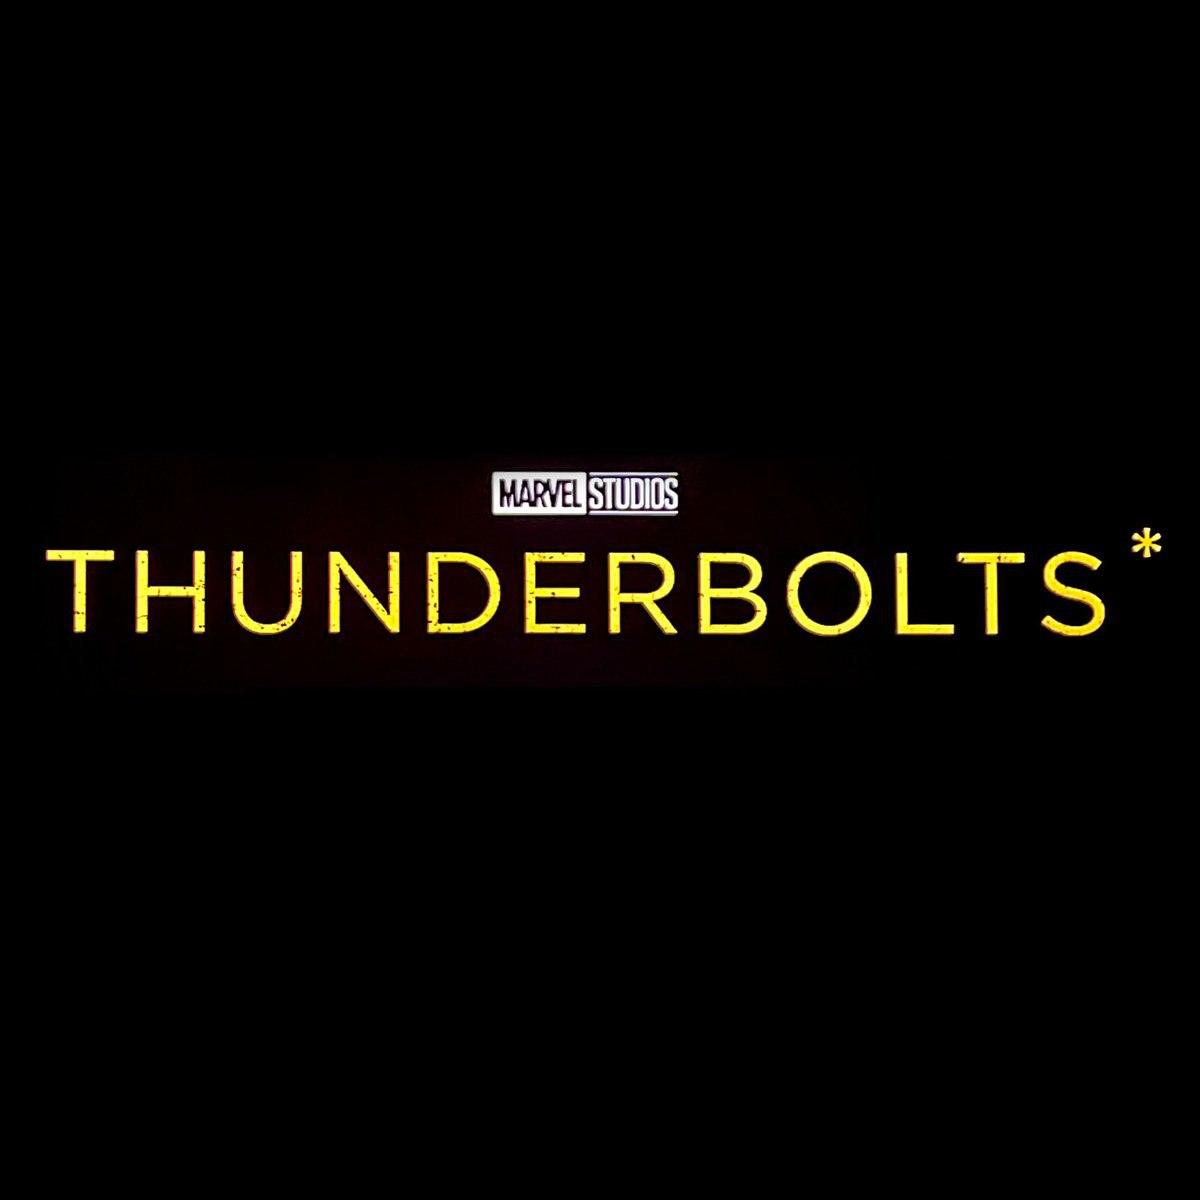 لوگو جدید فیلم *Thunderbolts